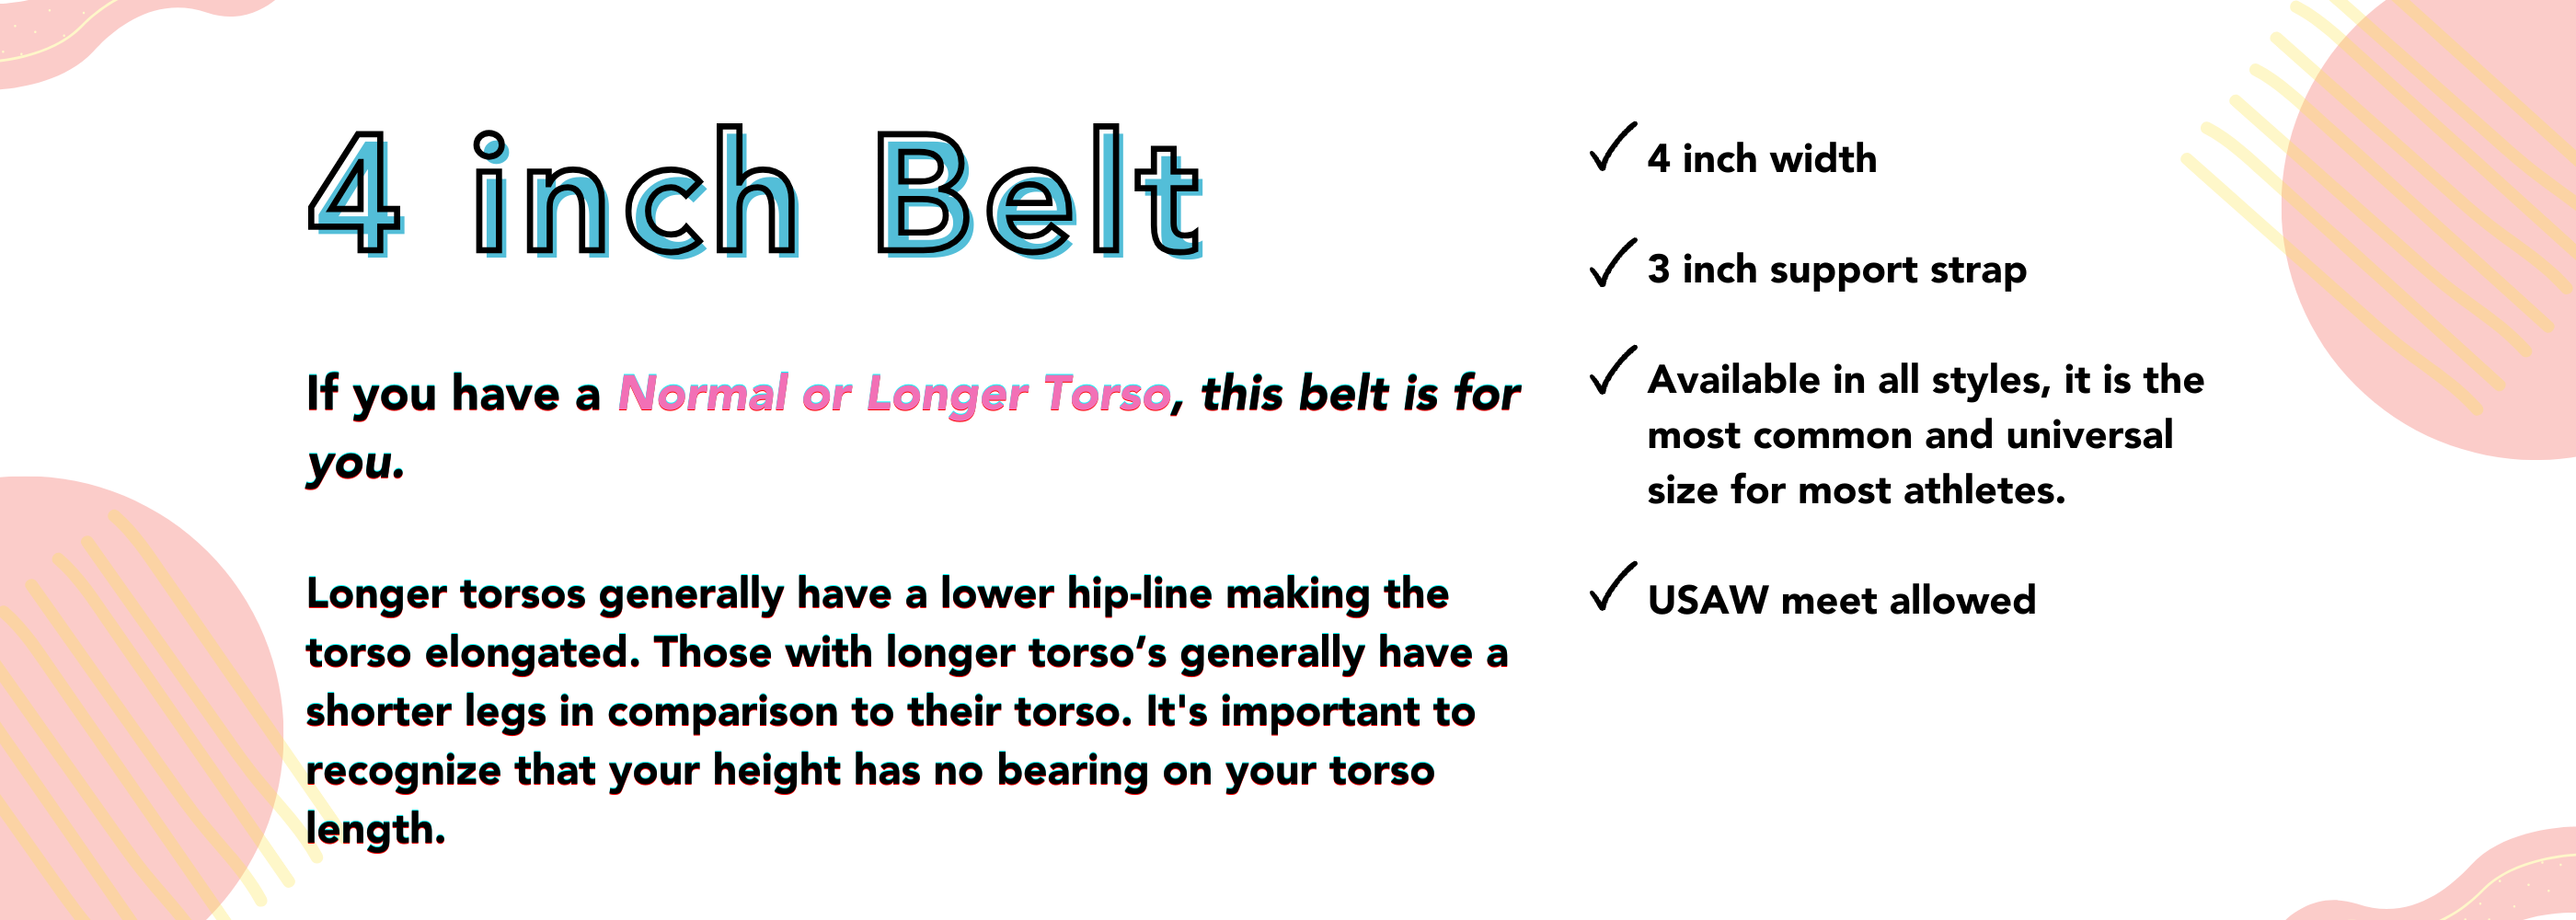 header describing the benefits of a 4 inch belt